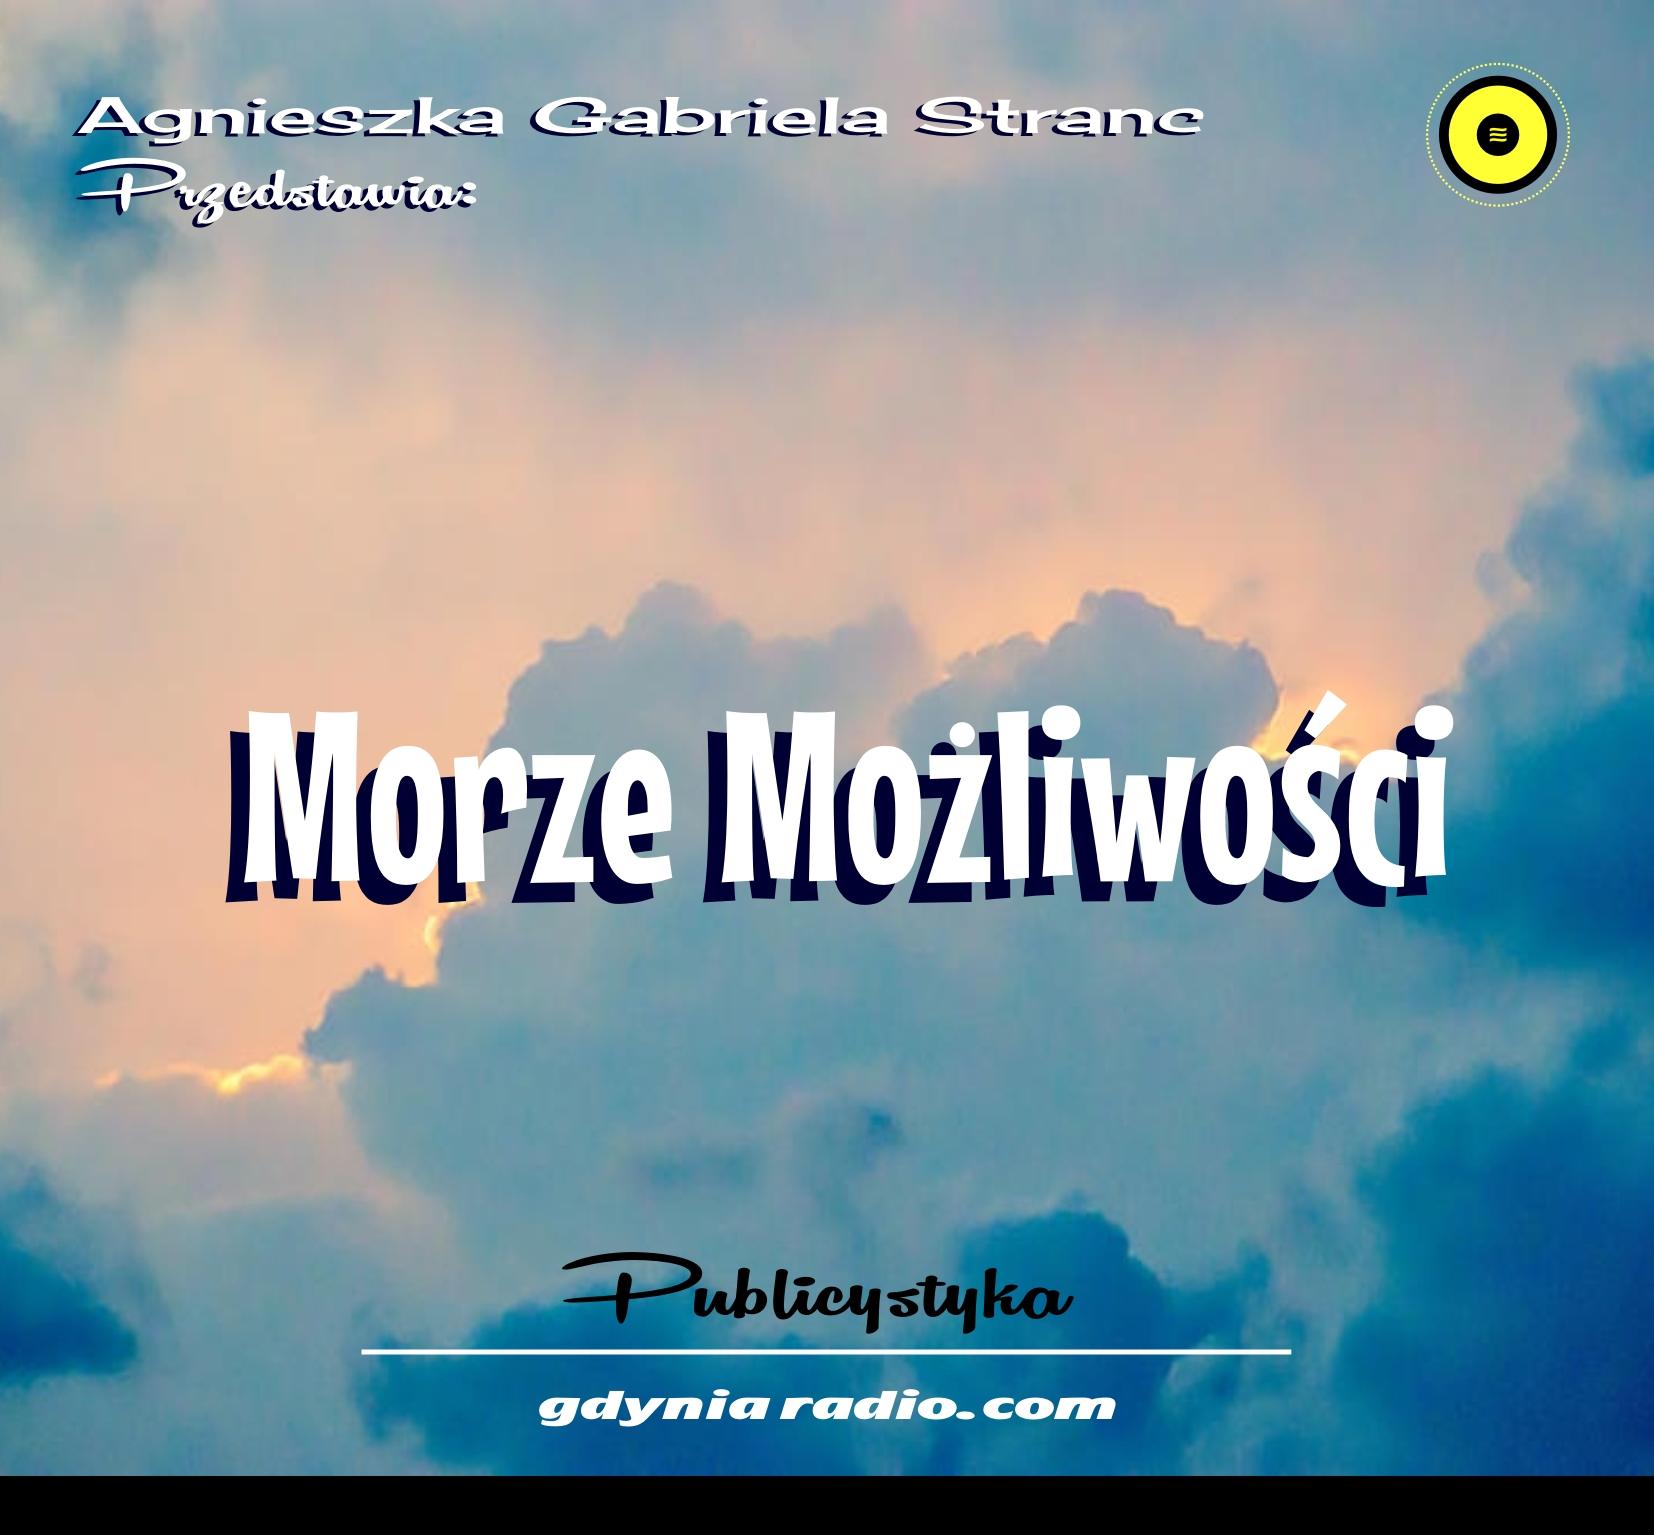 Gdynia Radio 2021 Moze mozliwosci 5 Agnieszka Stranc zzz Home Copy 2021 04 06